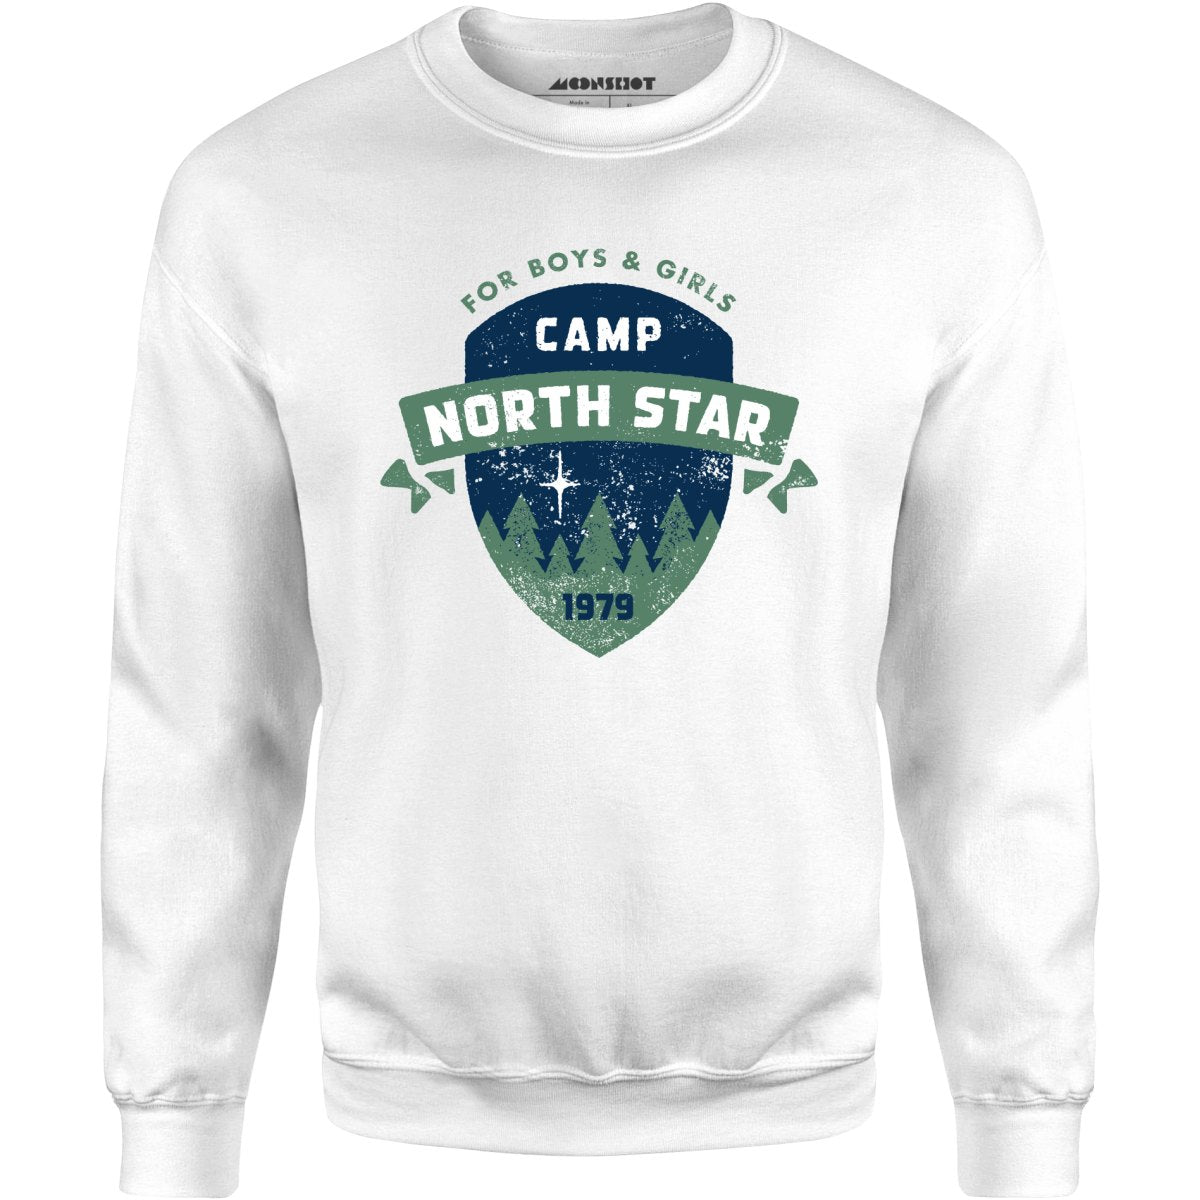 Camp North Star 1979 - Unisex Sweatshirt